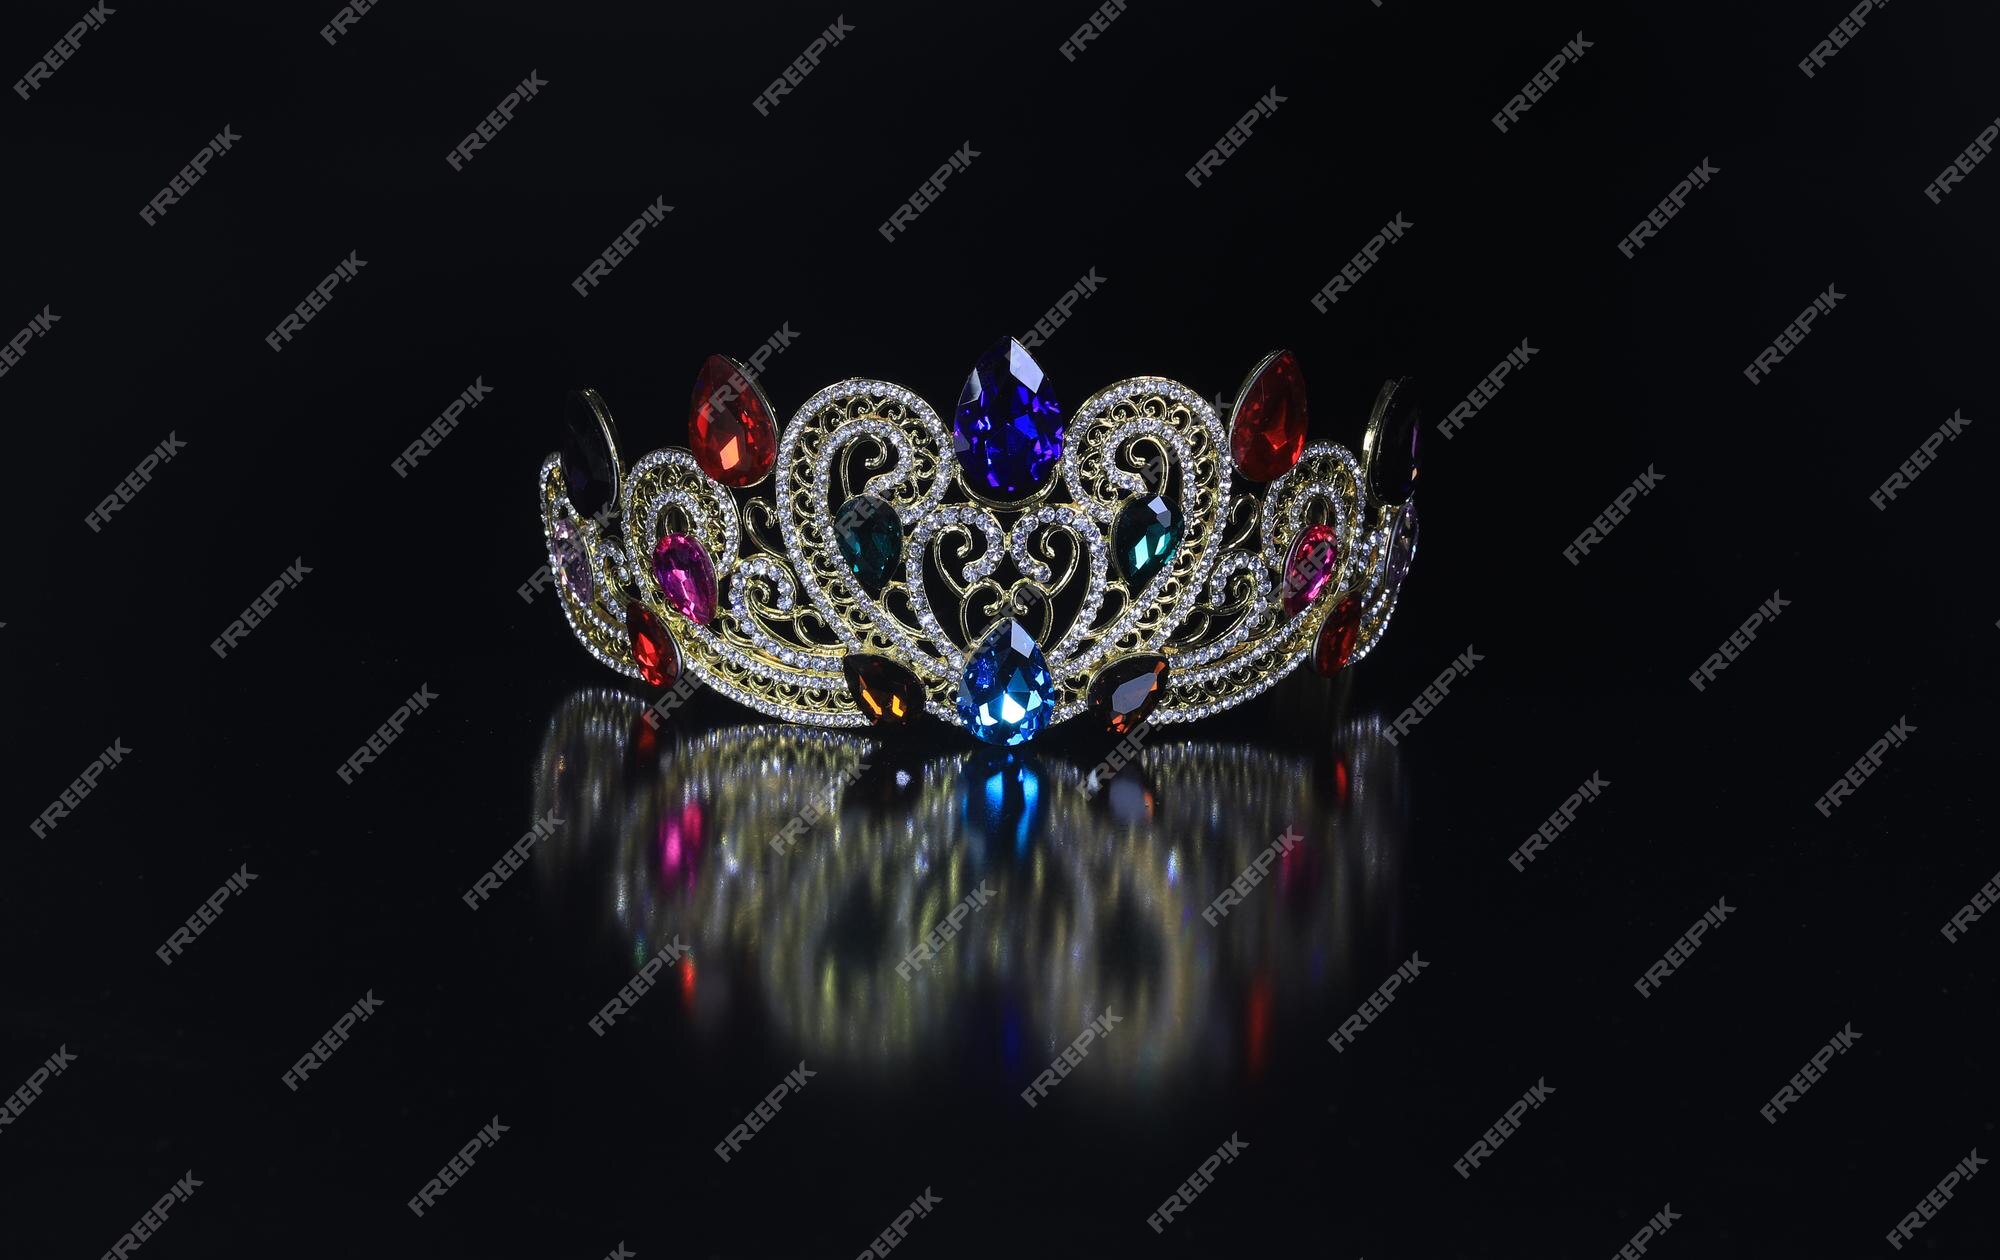 Hãy chiêm ngưỡng vương miện đen trên nền đen hoàn hảo cùng chúng tôi. Đây là món đồ trang sức tôn vinh sự quý phái của nữ hoàng bất kỳ. Được chế tác tỉ mỉ và đẹp mắt, chiếc vương miện này sẽ khiến bạn cảm thấy như là một vị hoàng hậu thực thụ.